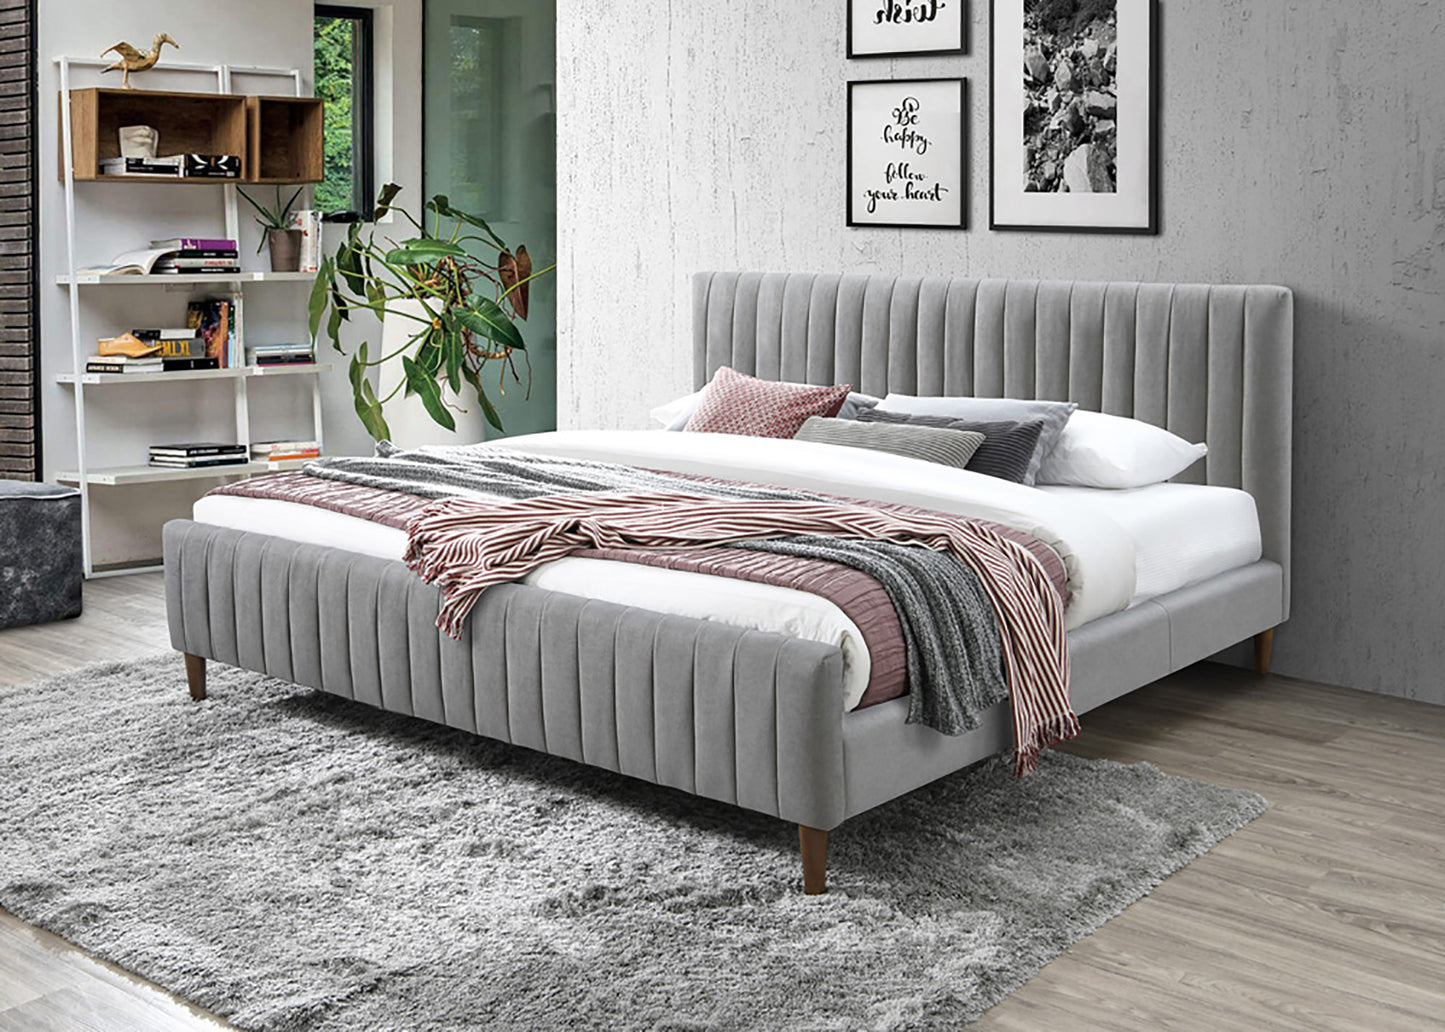 2 Colours - Hana Low-Profile Platform Bed